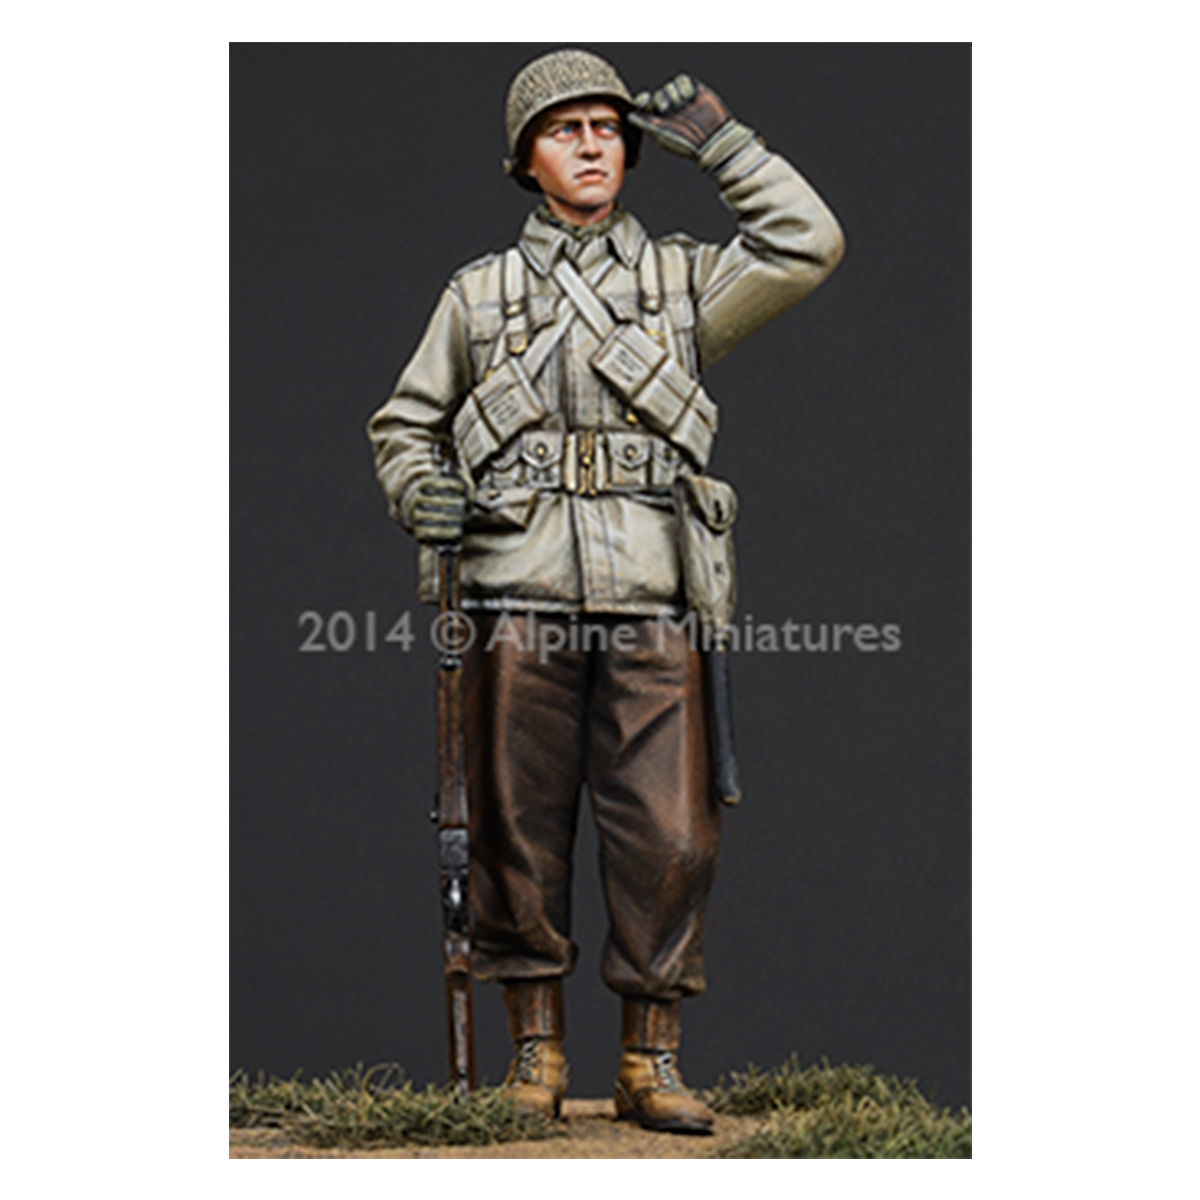 Alpine Miniatures – WW2 US Infantry 1/35